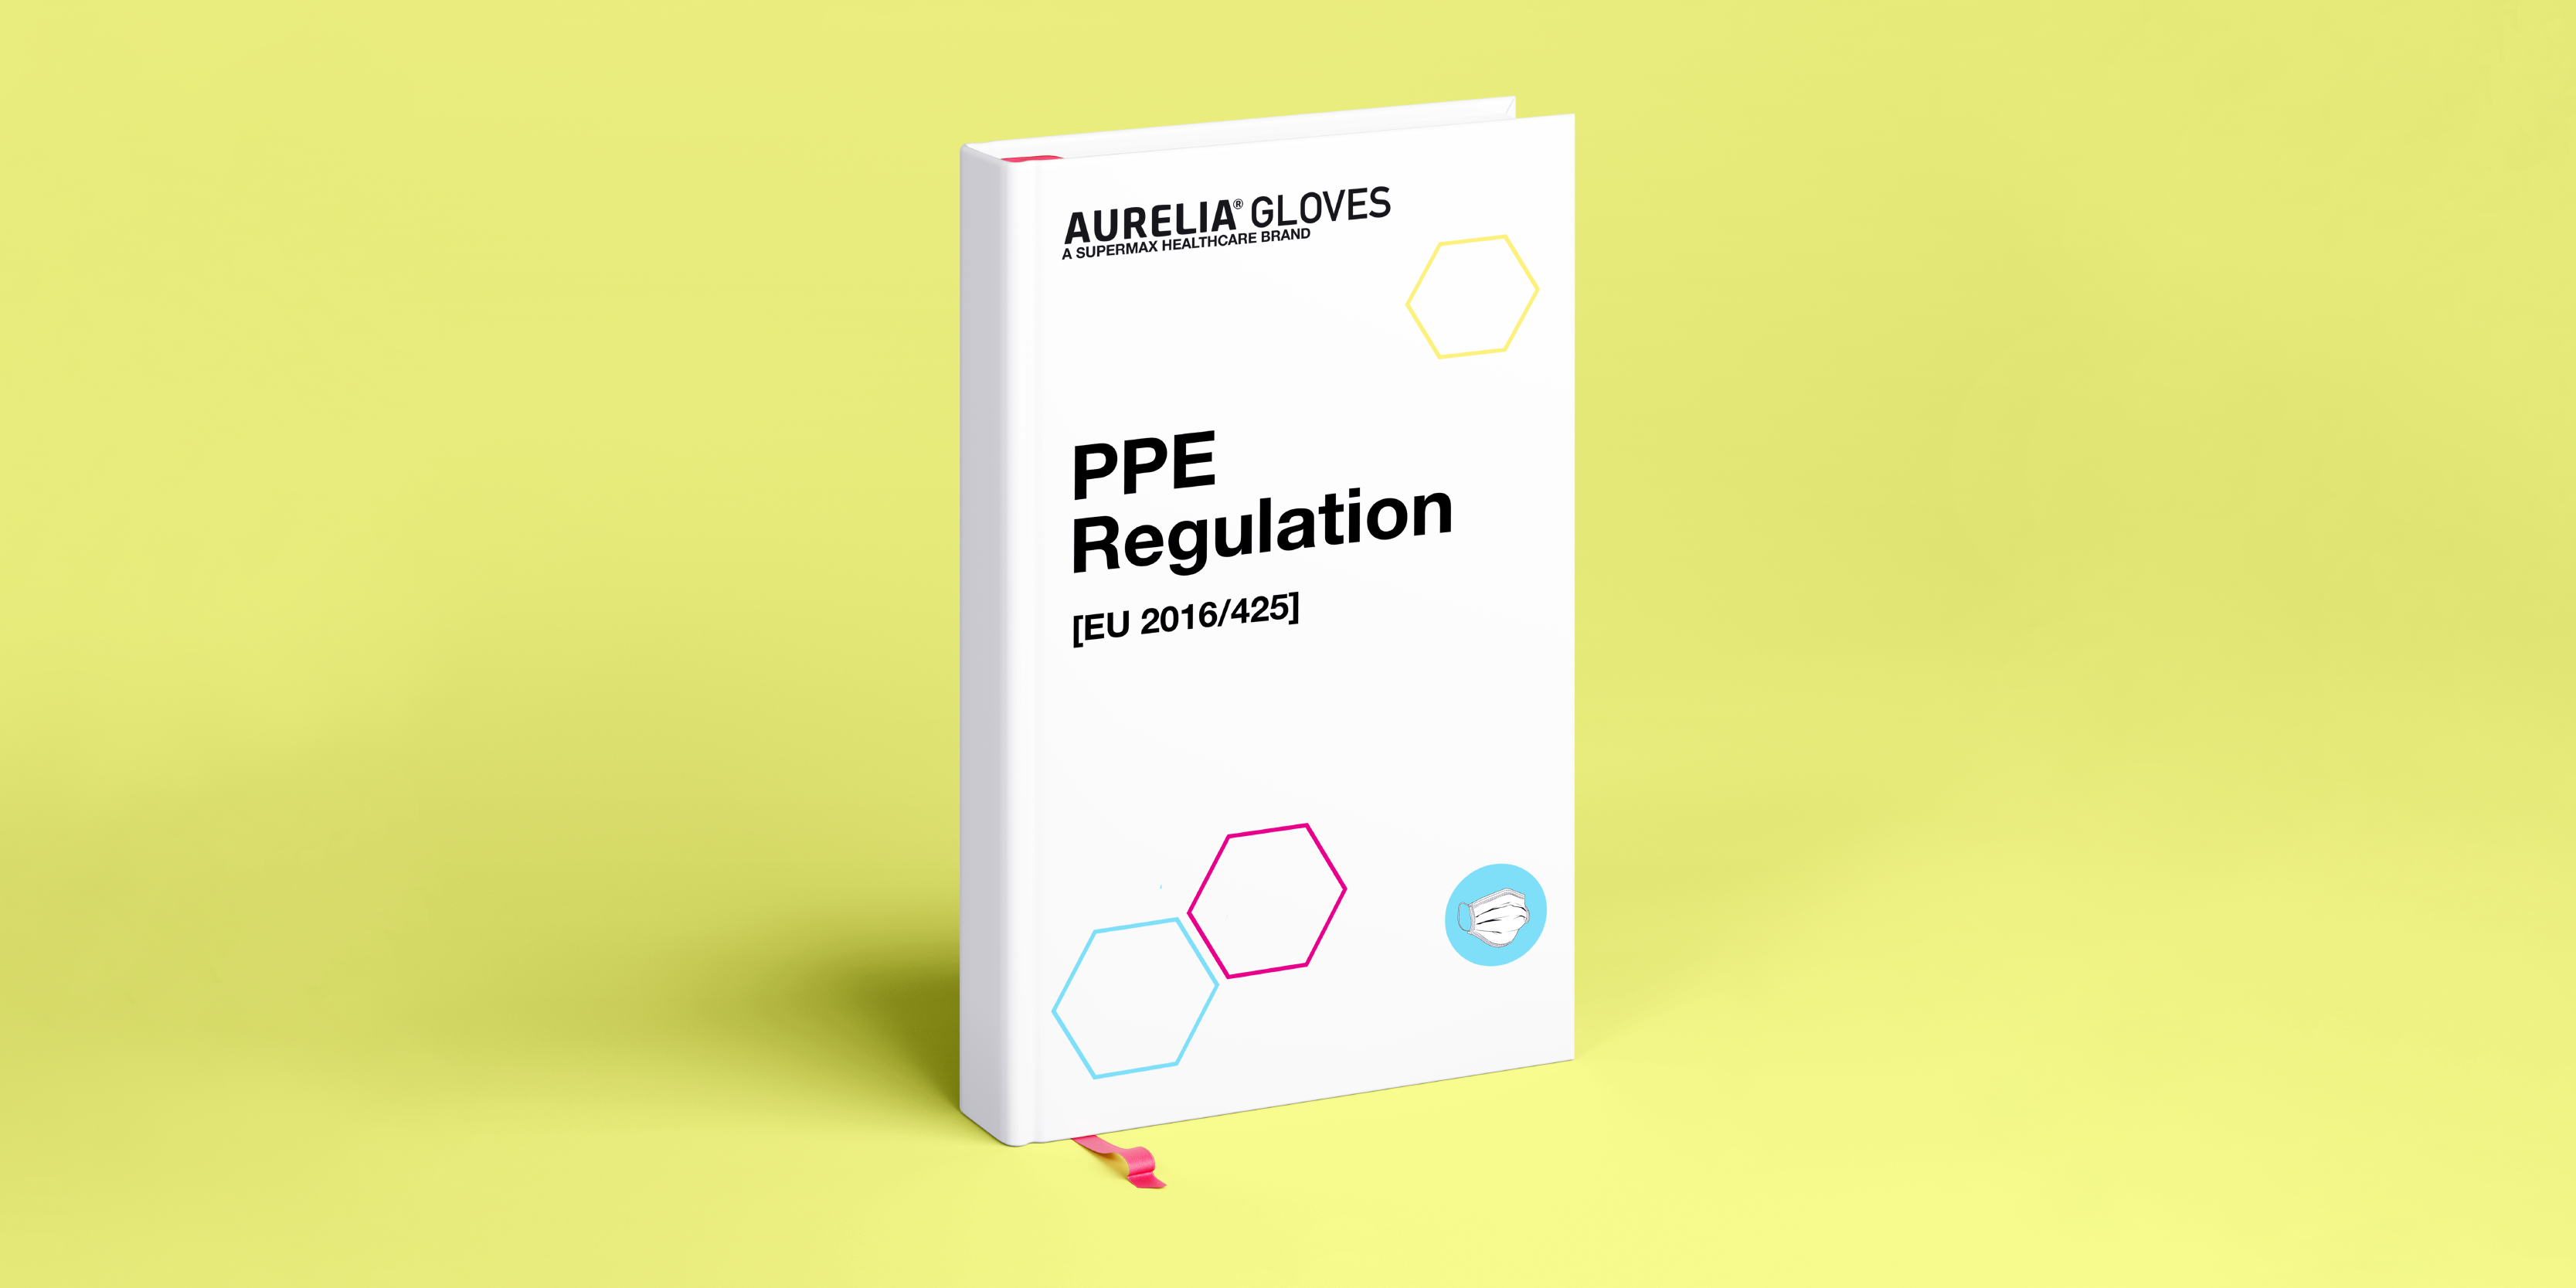 PPE Regulation (EN 2016/425)